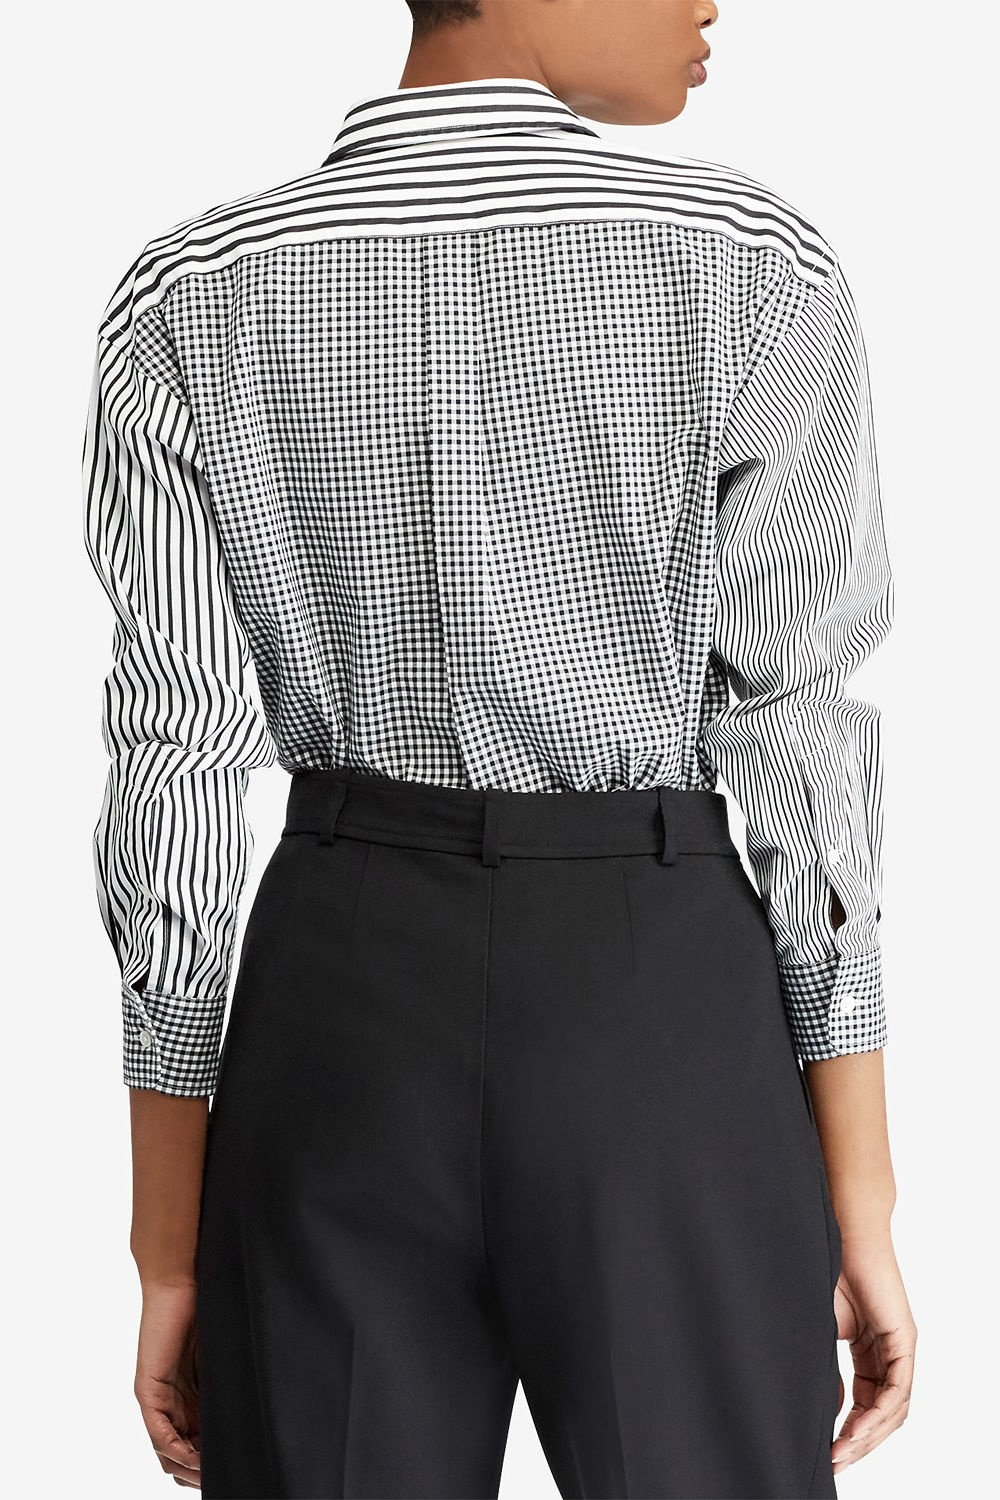 Рубашка Polo Ralph Lauren, размер US 6 (44-46)